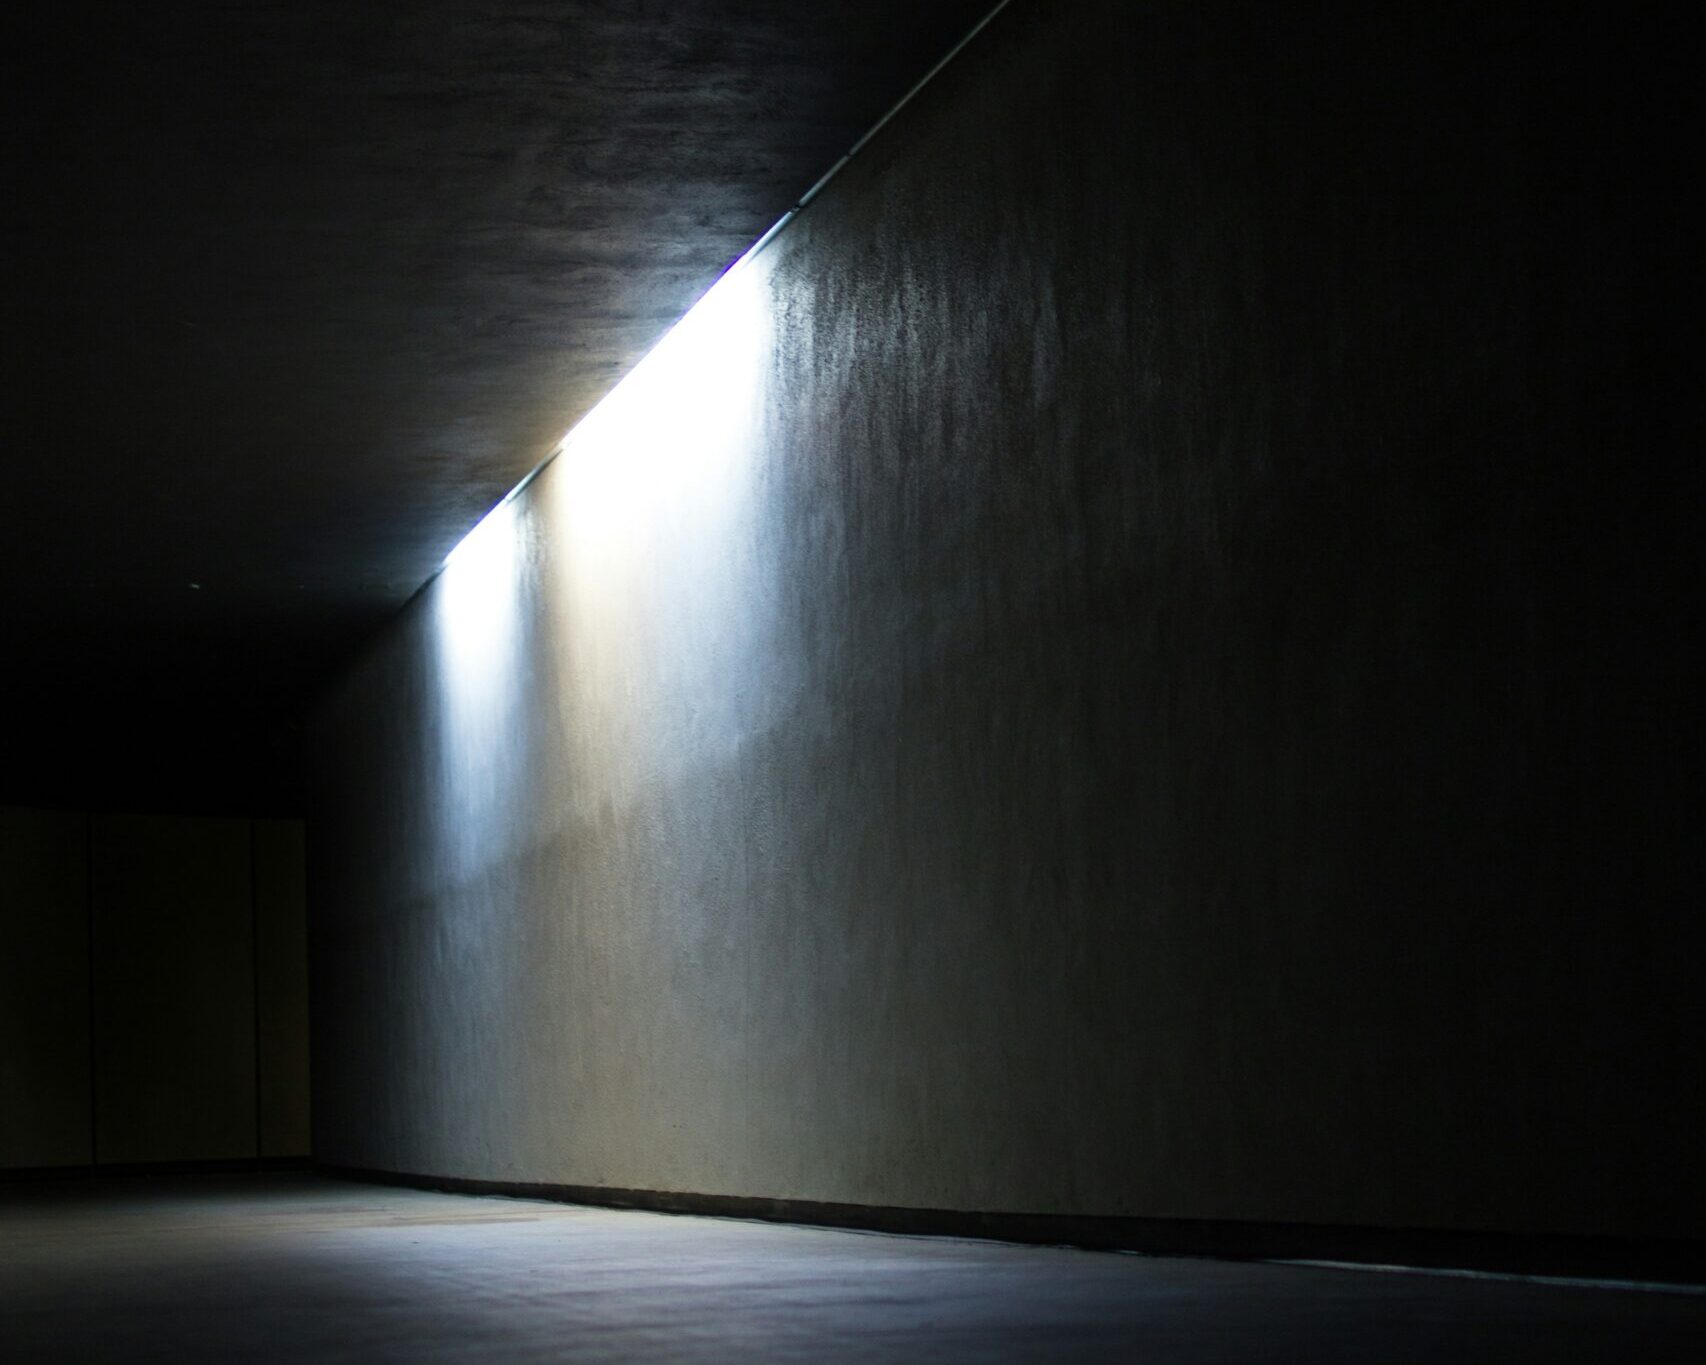 Bild von einem dunklen Raum bei dem eine Wand durch Akzentlicht hervorgehoben wird